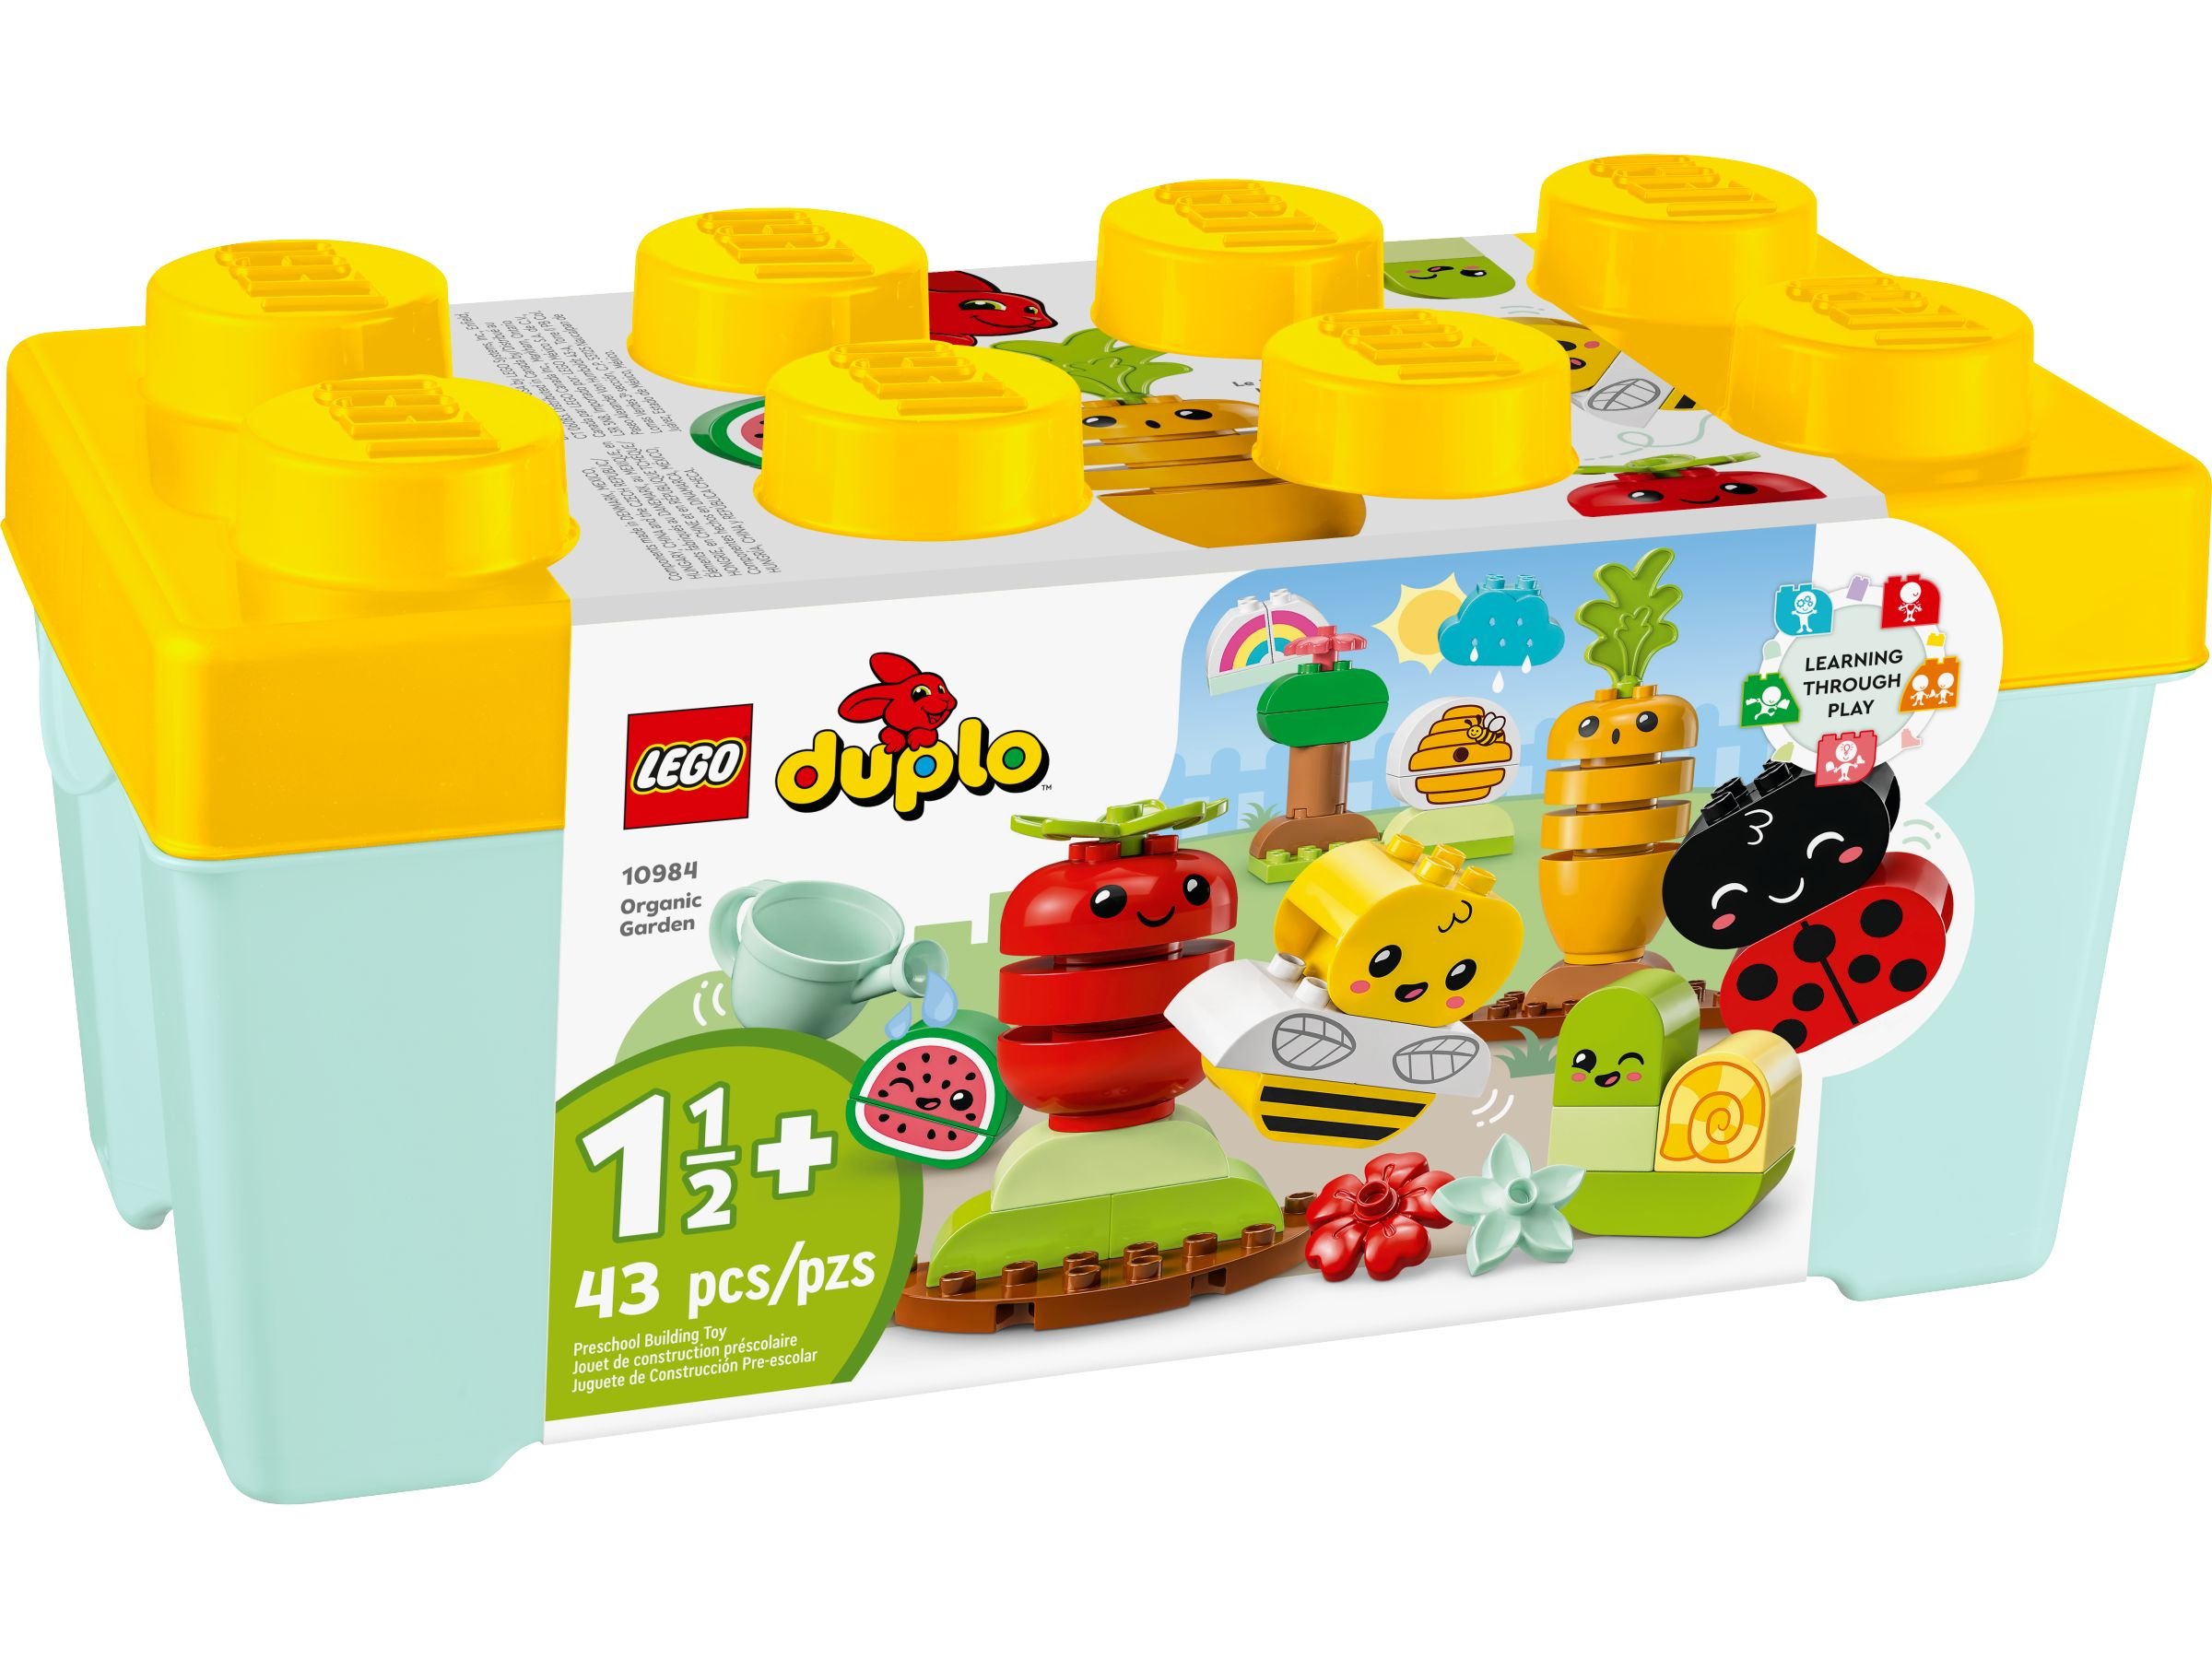 LEGO Duplo 10984 Biogarten LEGO_10984_alt1.jpg